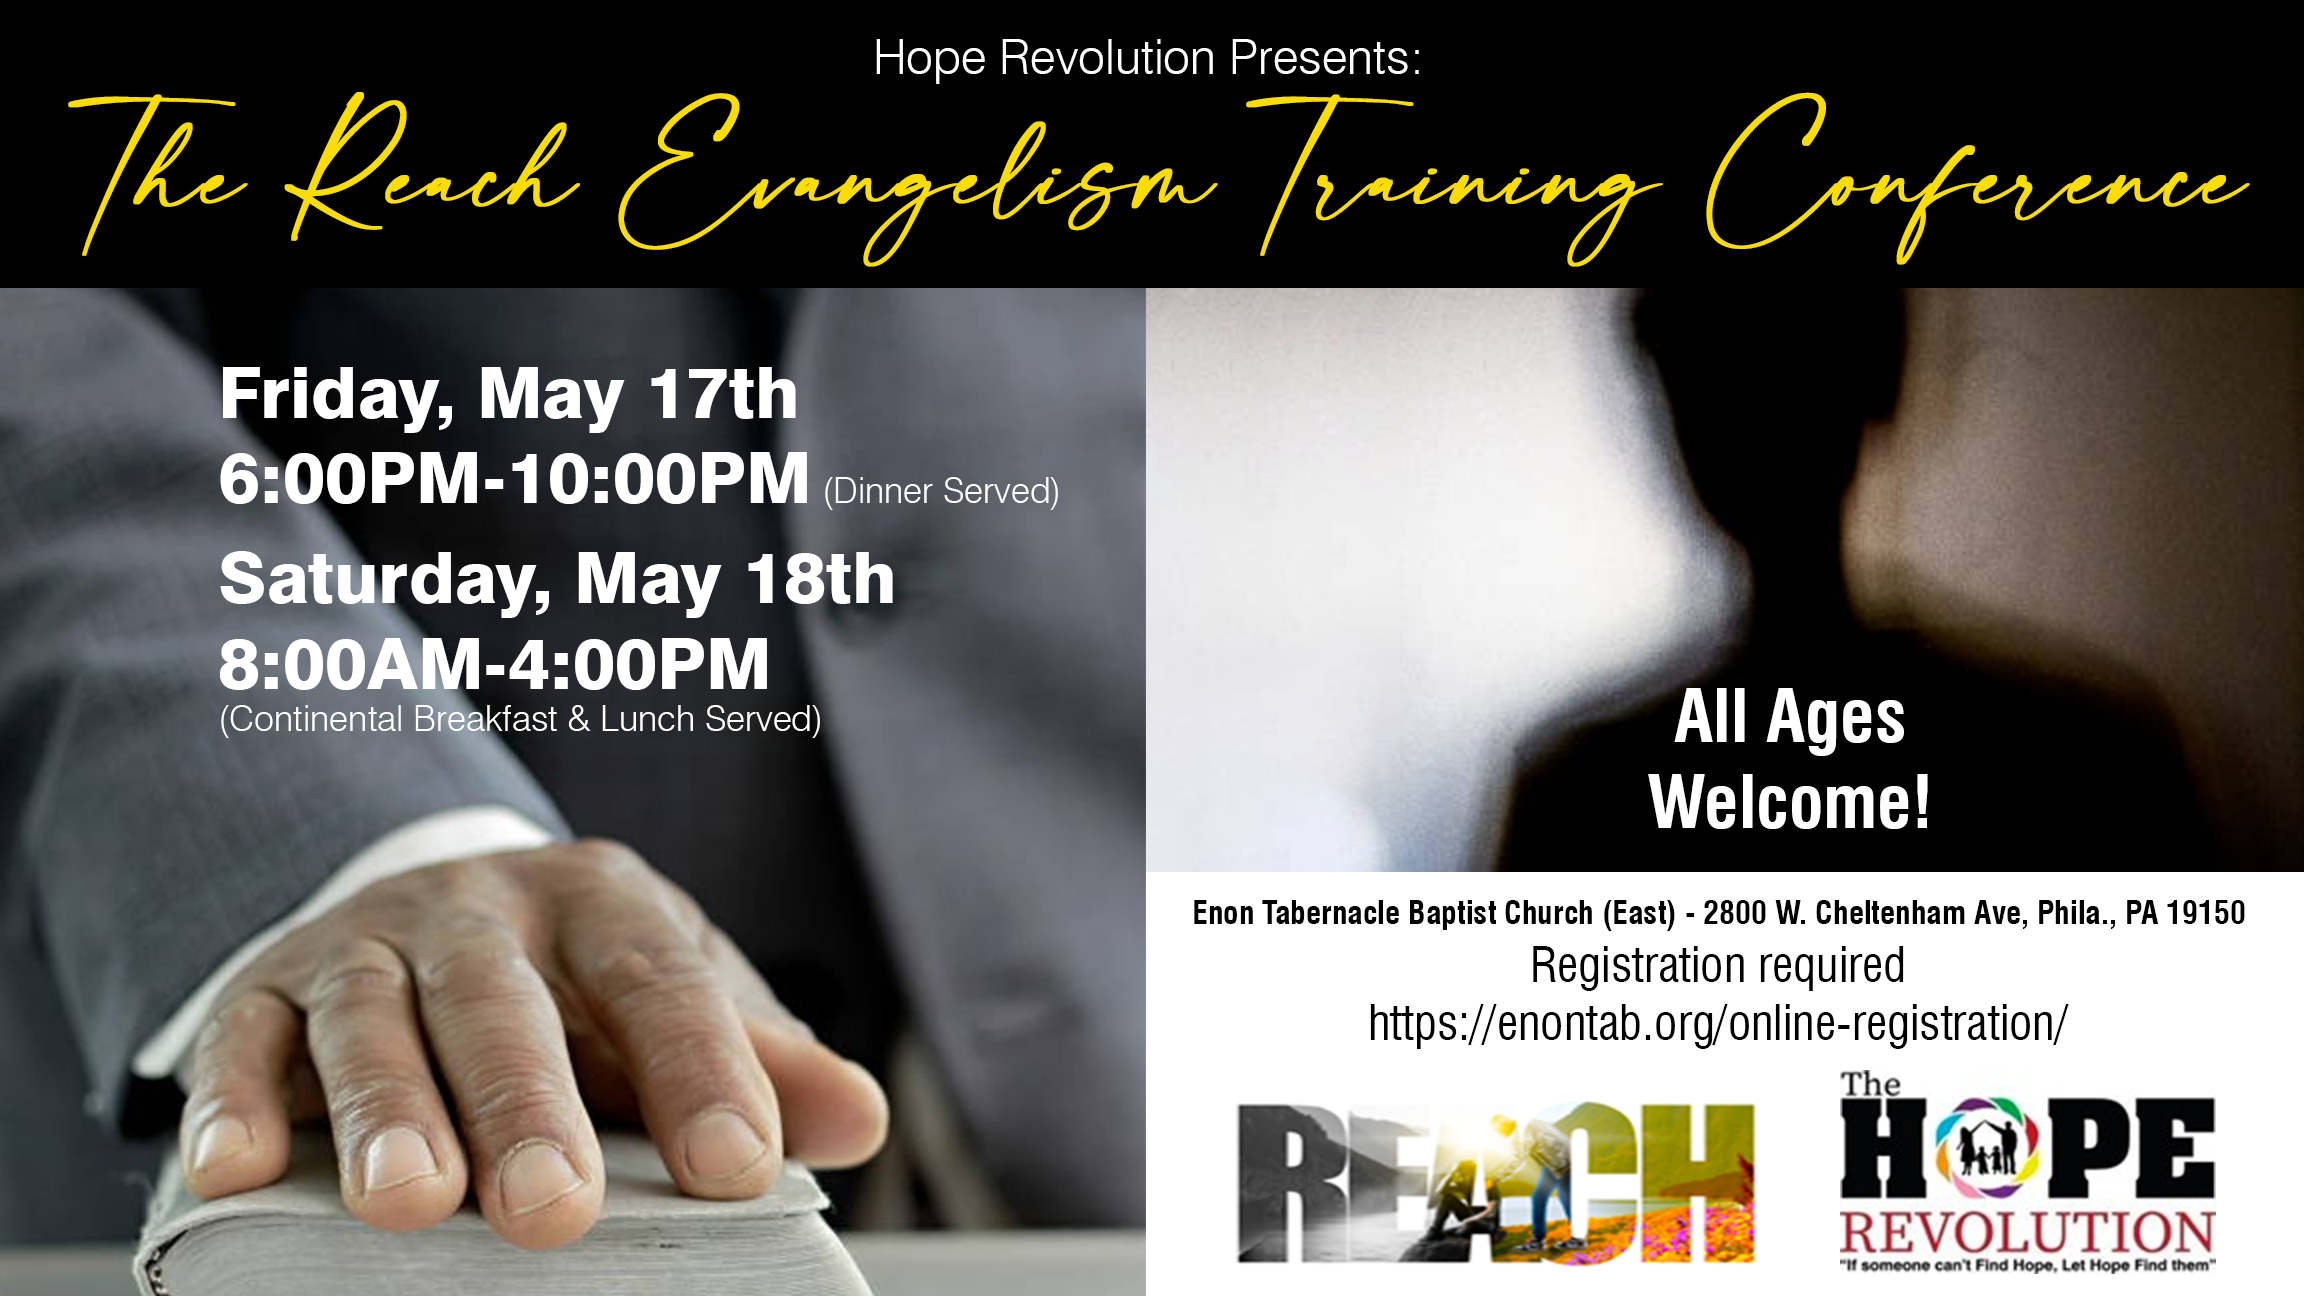 Reach Evangelism Training